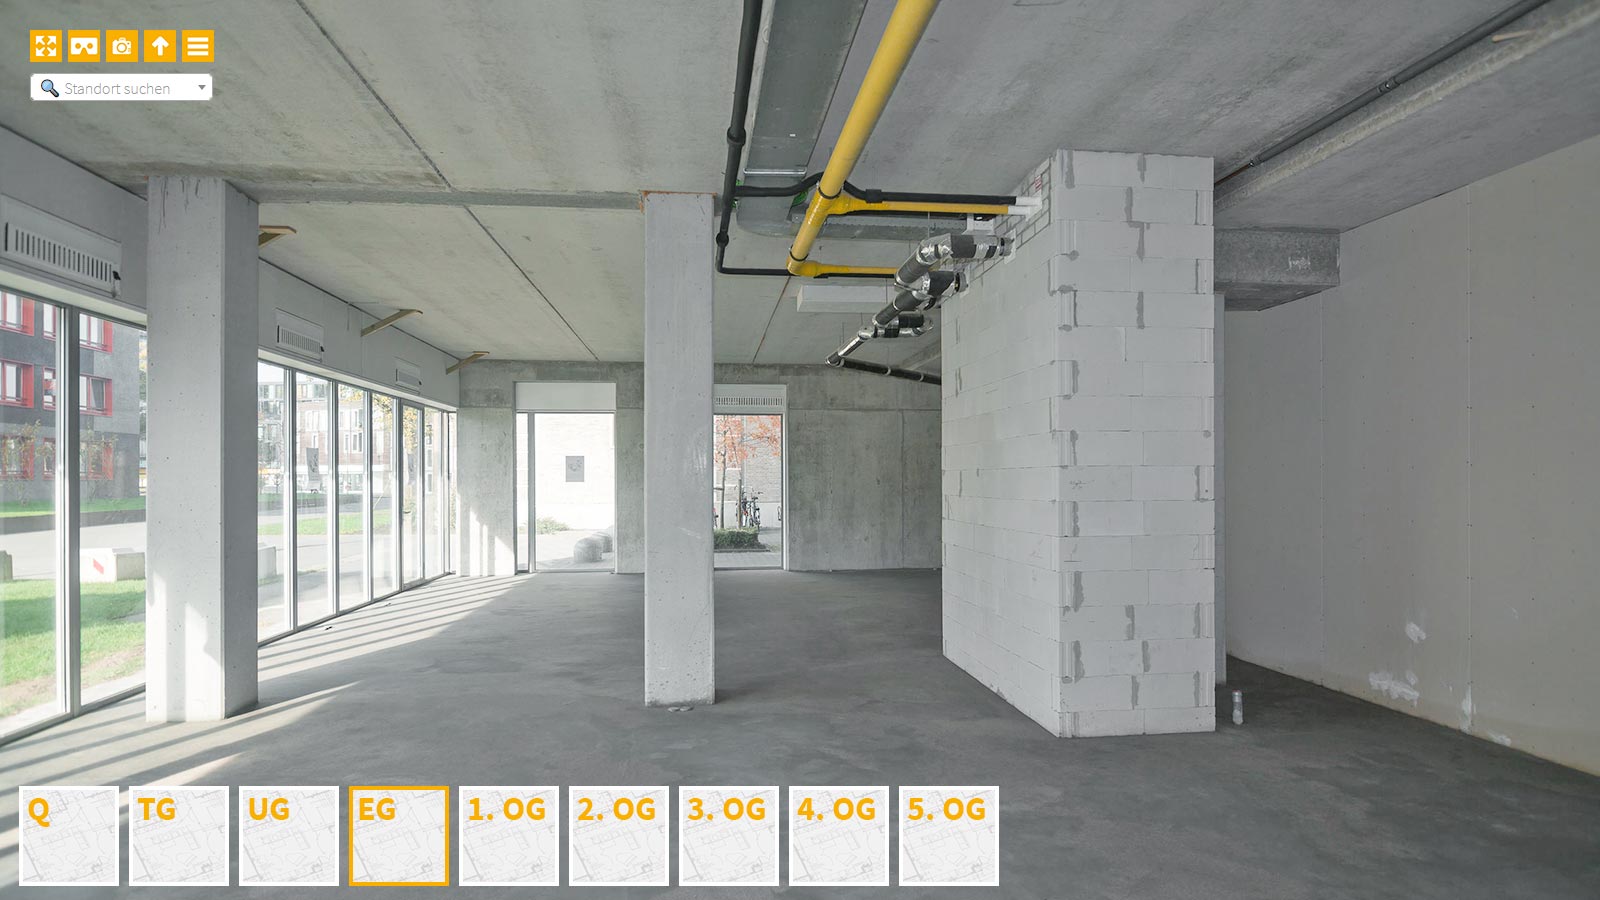 Baudokumentation 360 Grad bei gestörten Projekten in 


	


	


	


	


	


	


	


	


	


	Kaiserslautern









, Bilddokumentation als virtueller Rundgang